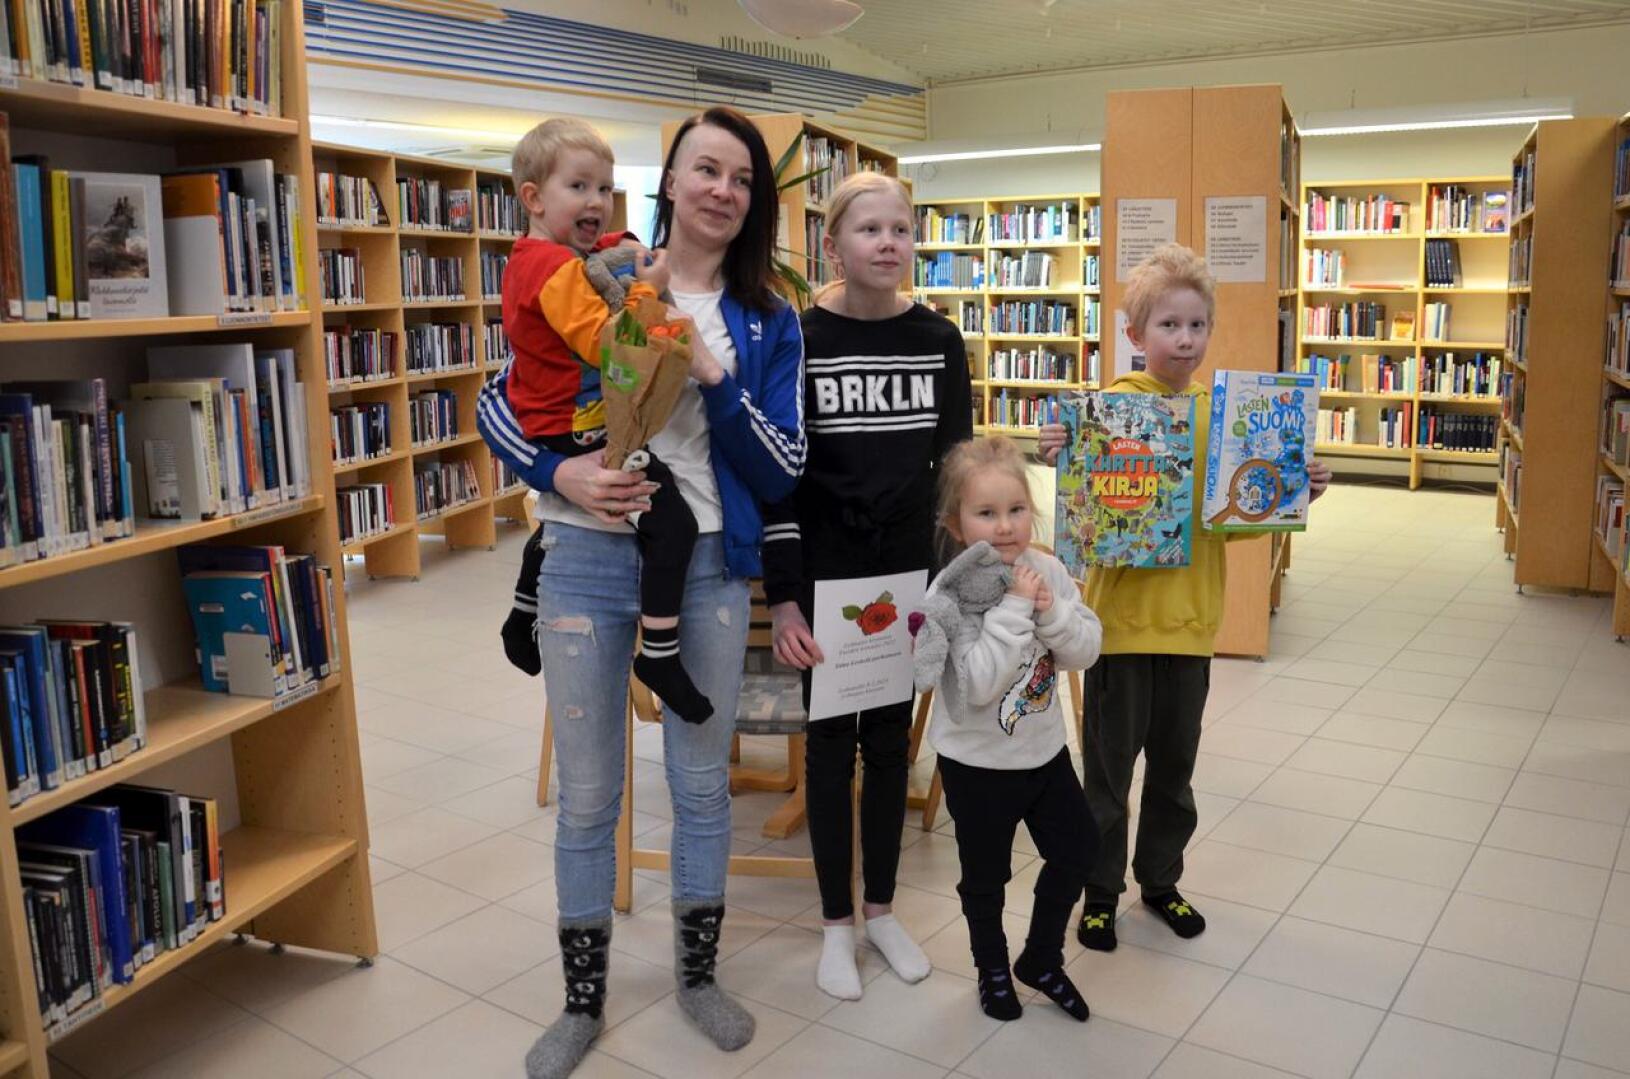 Lohtaja. Lohtajan kirjaston vuoden lainaajan palkinnon sai Tiina Leskelä lapsineen. Äidin kanssa kirjastossa käyvät säännöllisesti kaikki neljä lasta: Justus, 3, Tinja, 11, Venja, 4 ja Tiitus, 9 vuotta.